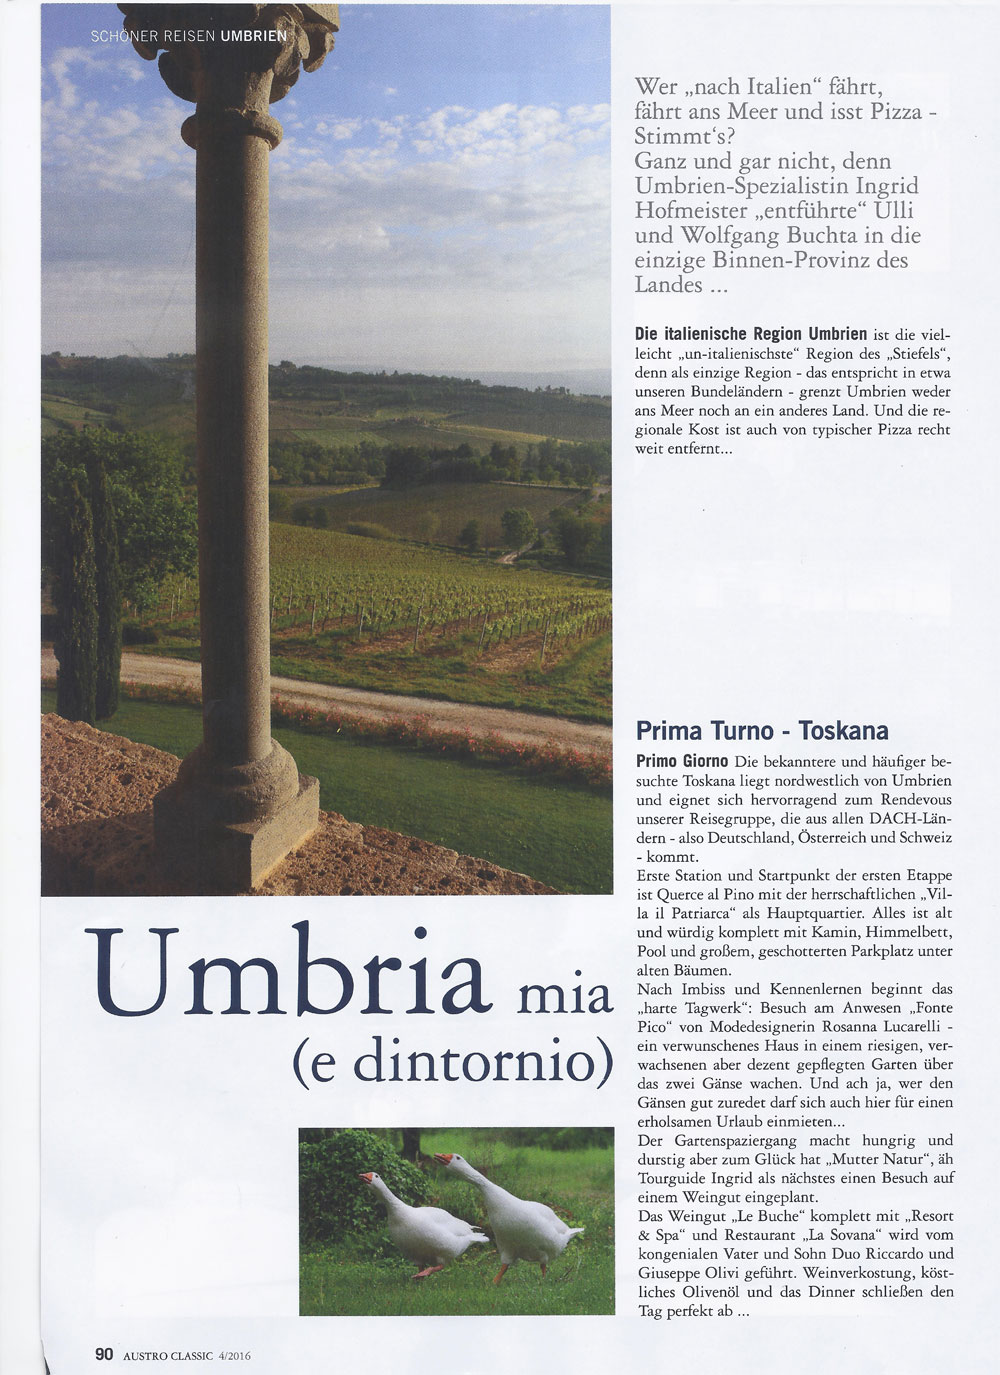 Austro Classic Umbrien Reise mit Umbria mia